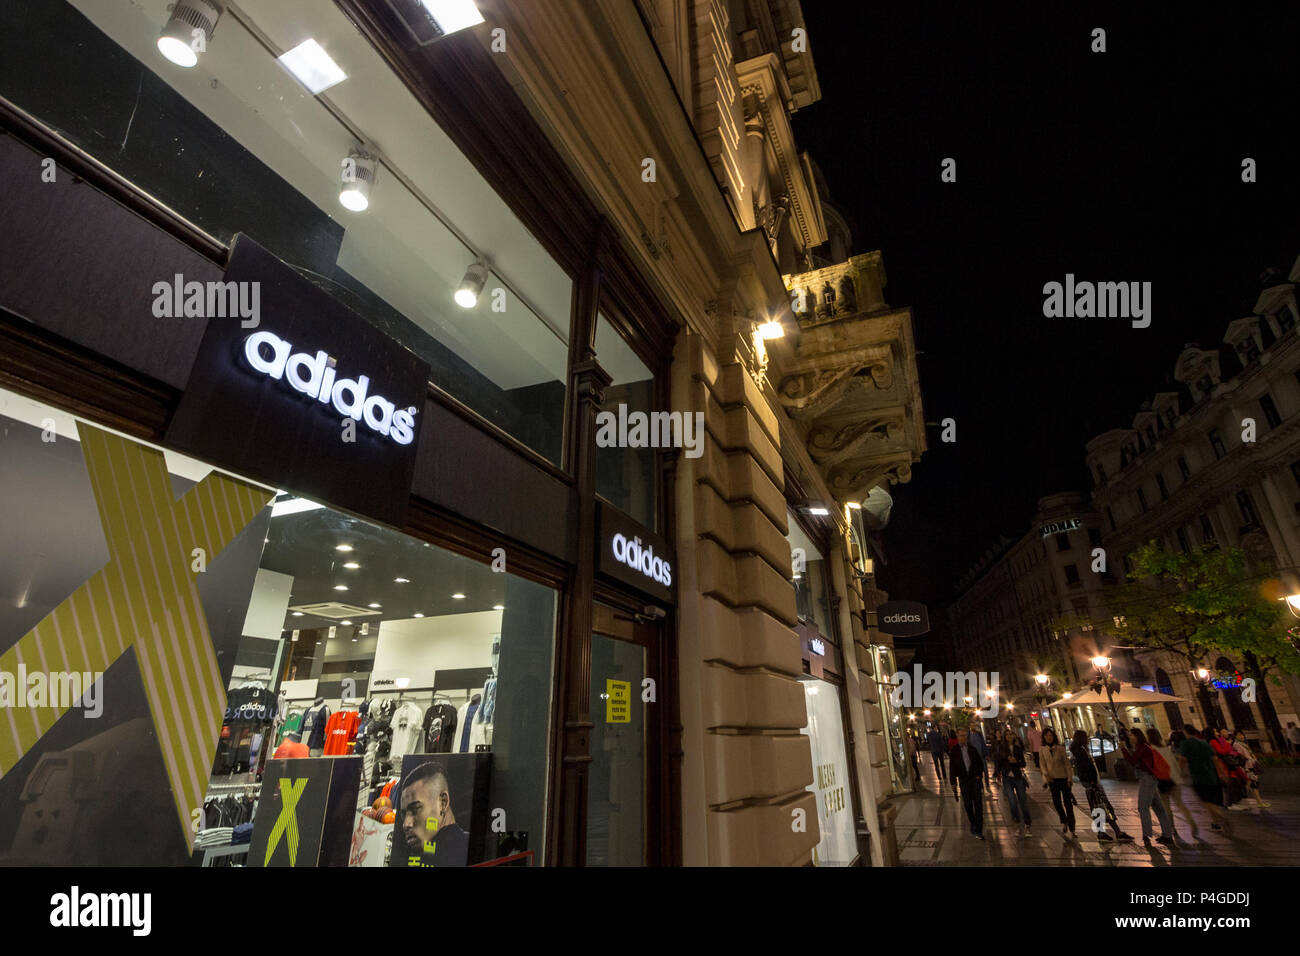 Belgrad, SERBIEN - 16. JUNI 2018: das Logo von Adidas auf Ihre wichtigsten Store für Belgrad. Adidas ist ein Deutscher sportswear Marke, die größte in Europa Bild Stockfoto